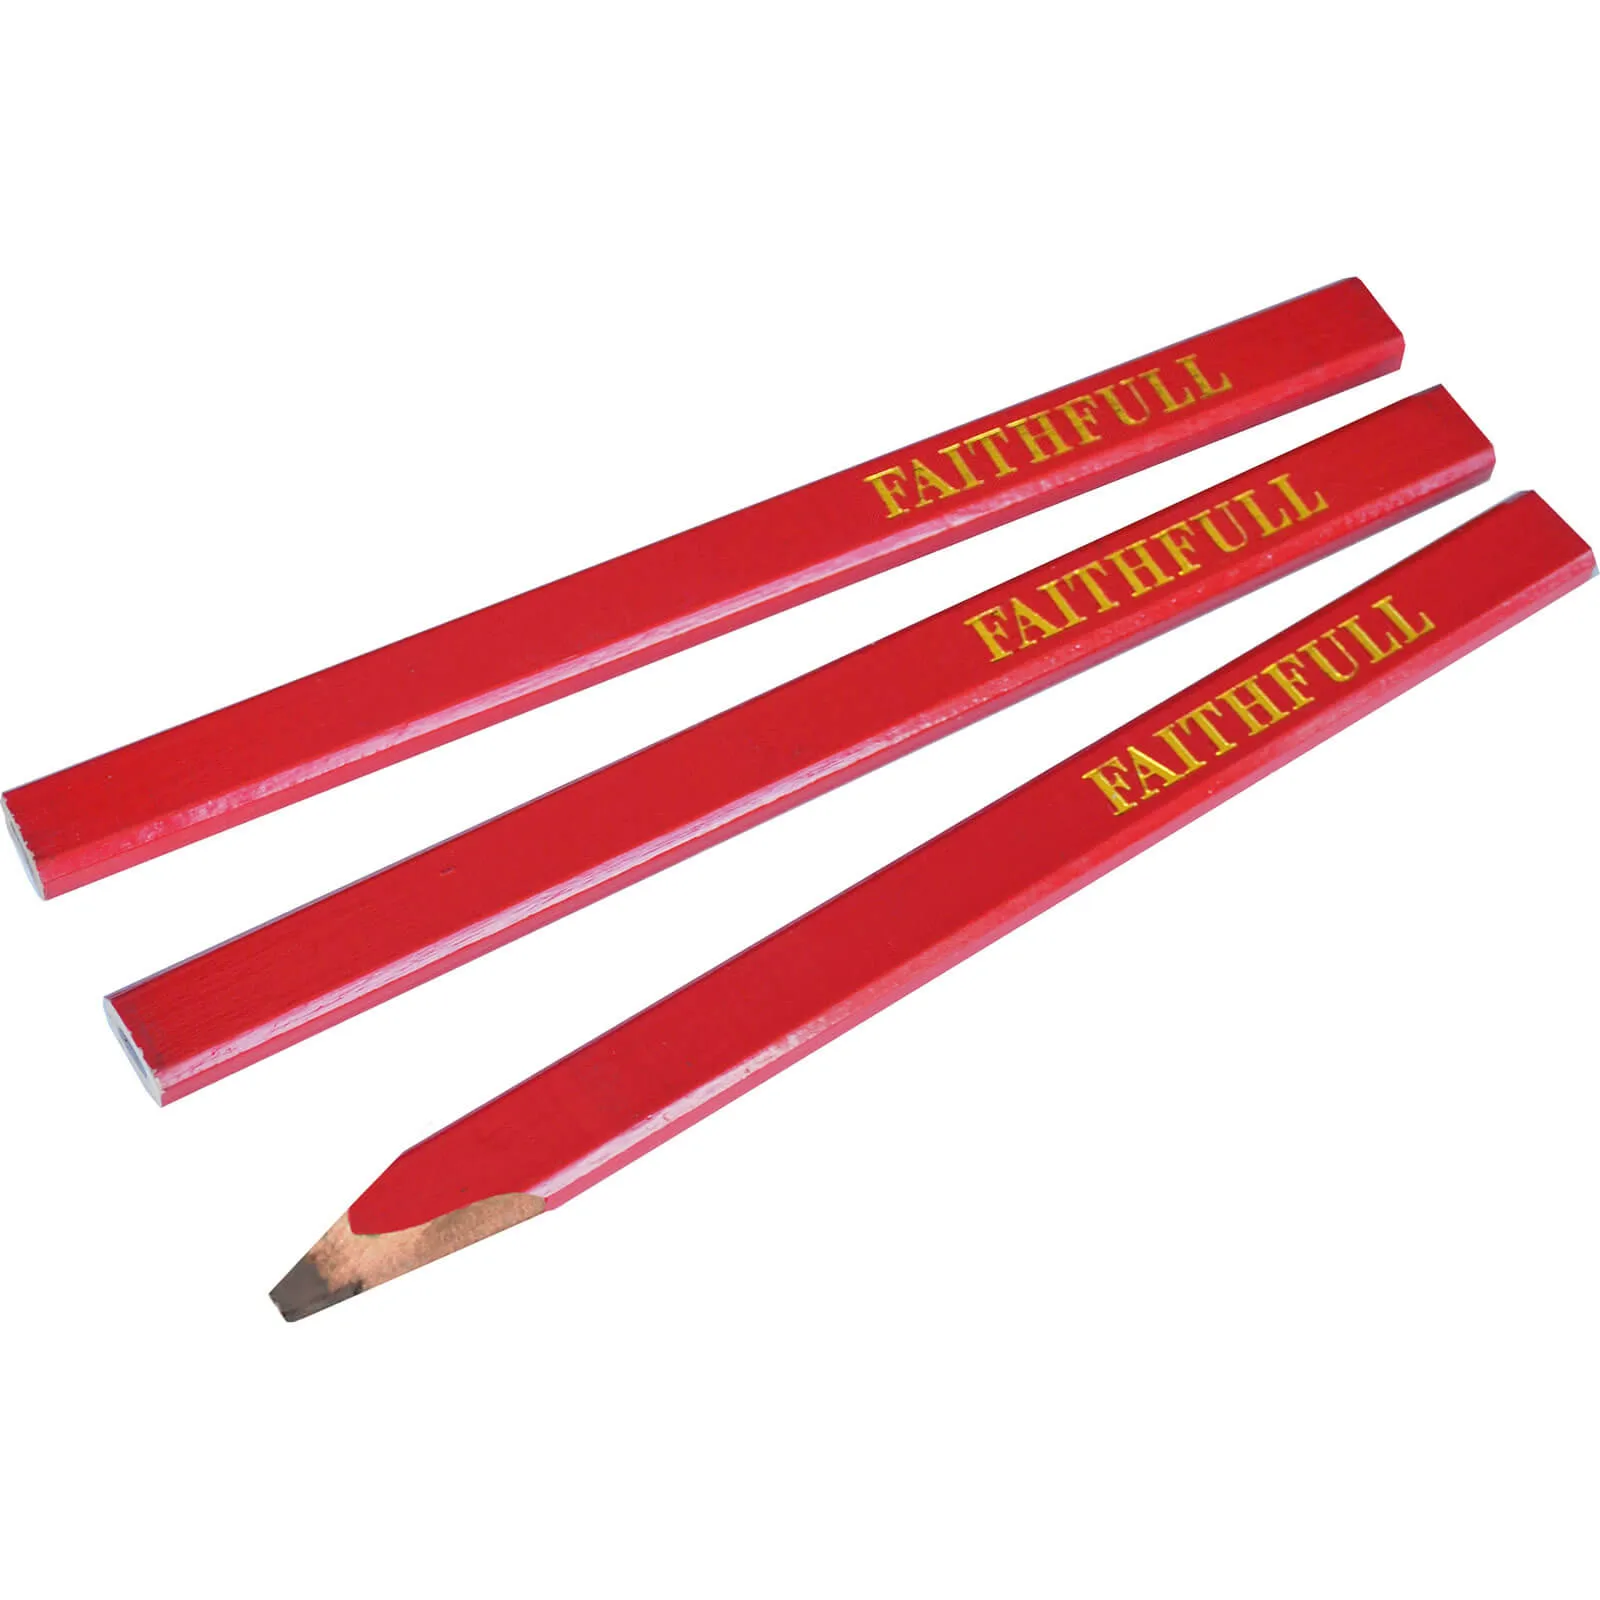 Faithfull Medium Carpenters Pencils Red - Pack of 3